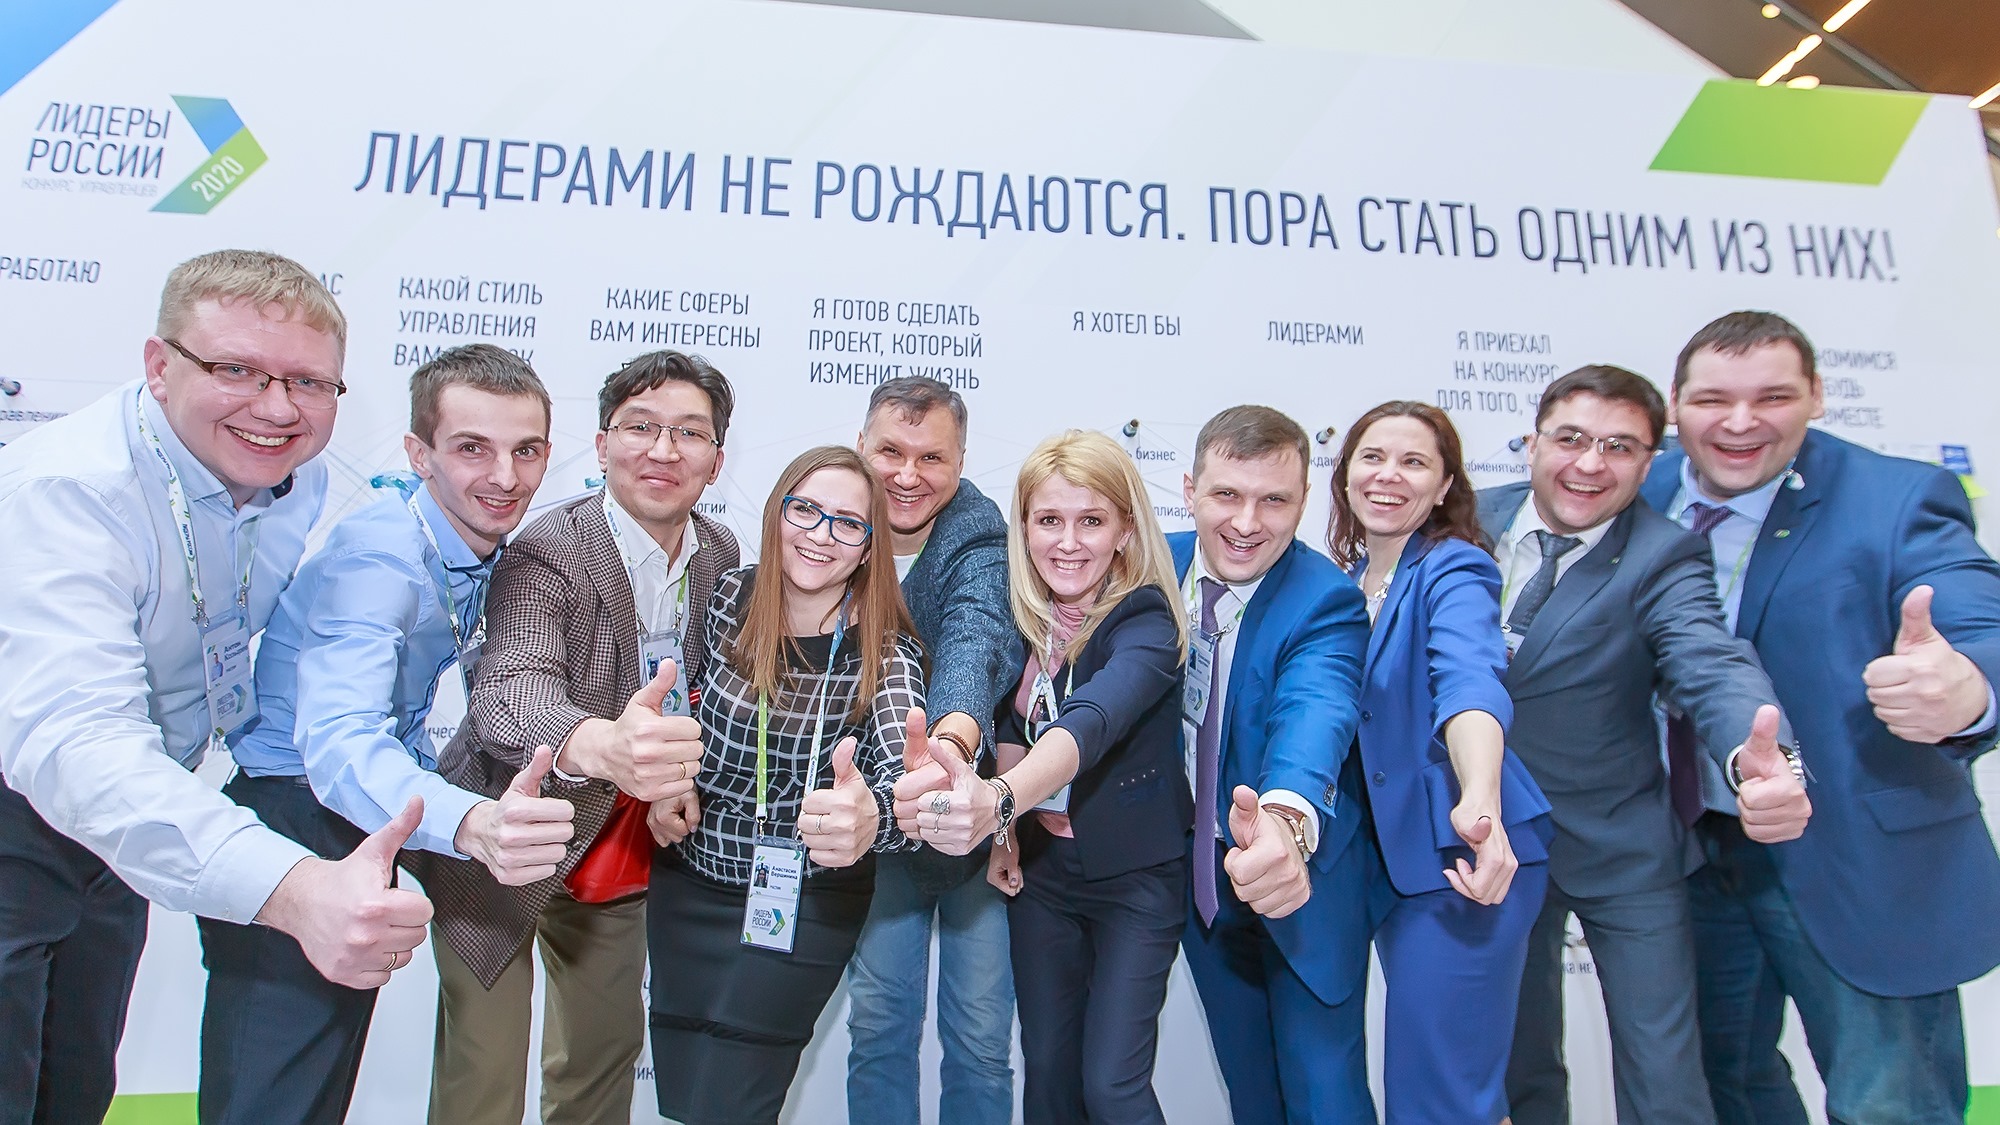 Участники конкурса "Лидеры России". Фото с официальной страницы Facebook